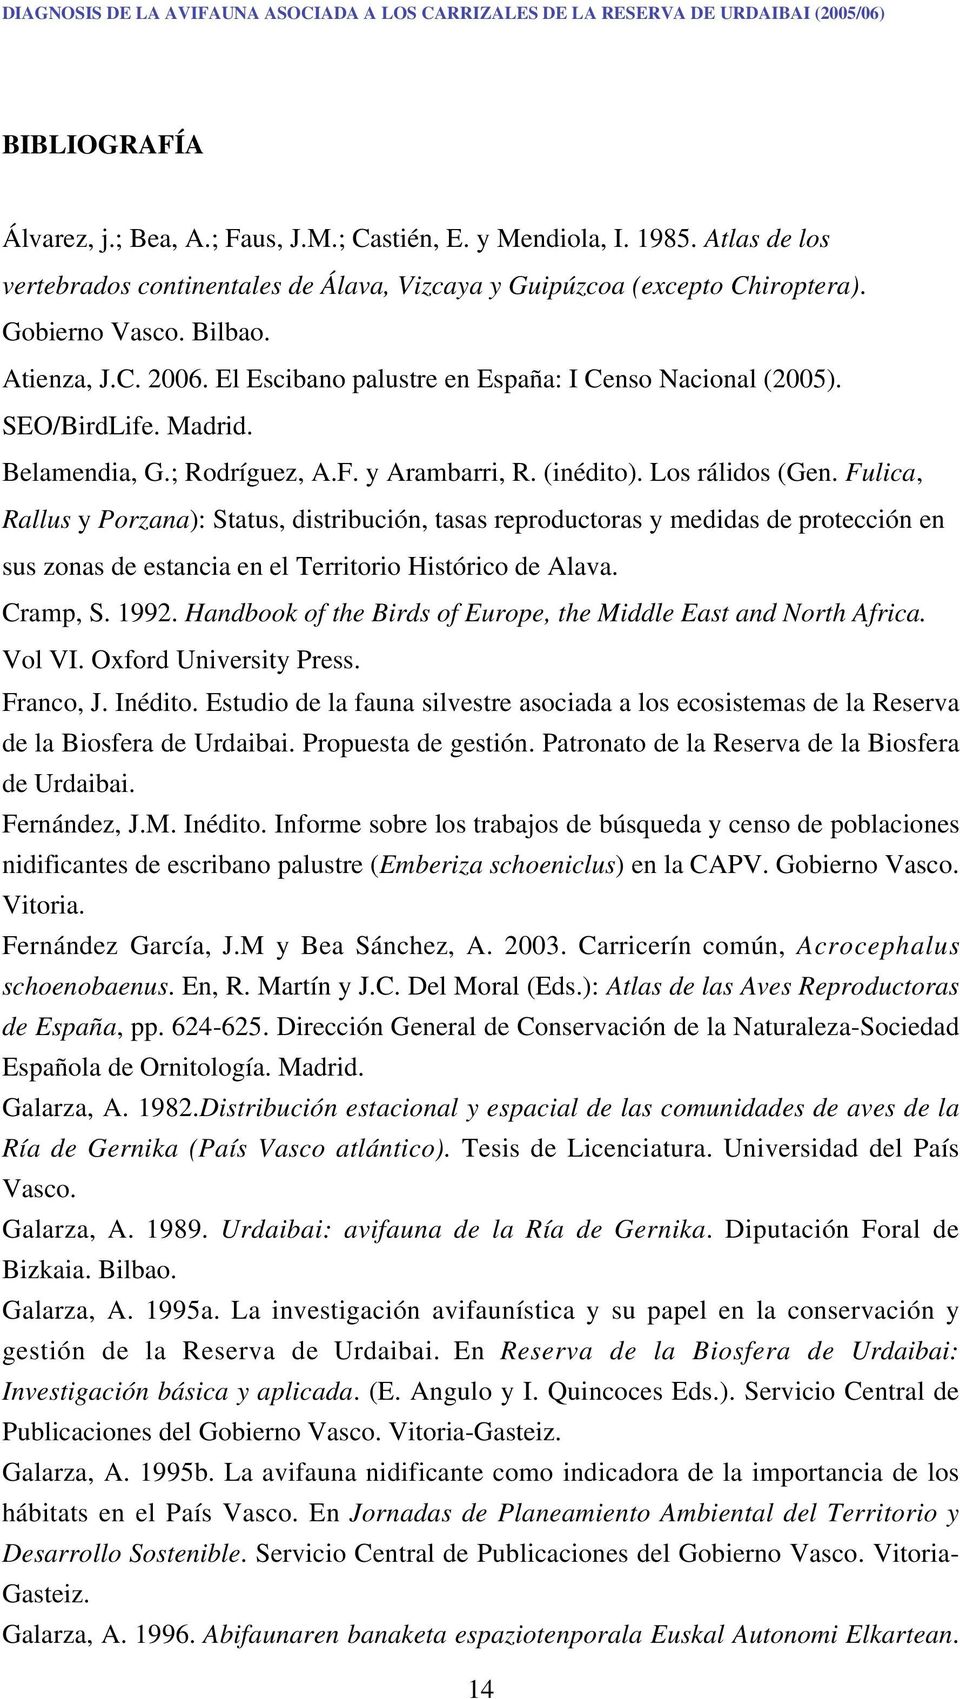 SEO/BirdLife. Madrid. Belamendia, G.; Rodríguez, A.F. y Arambarri, R. (inédito). Los rálidos (Gen.